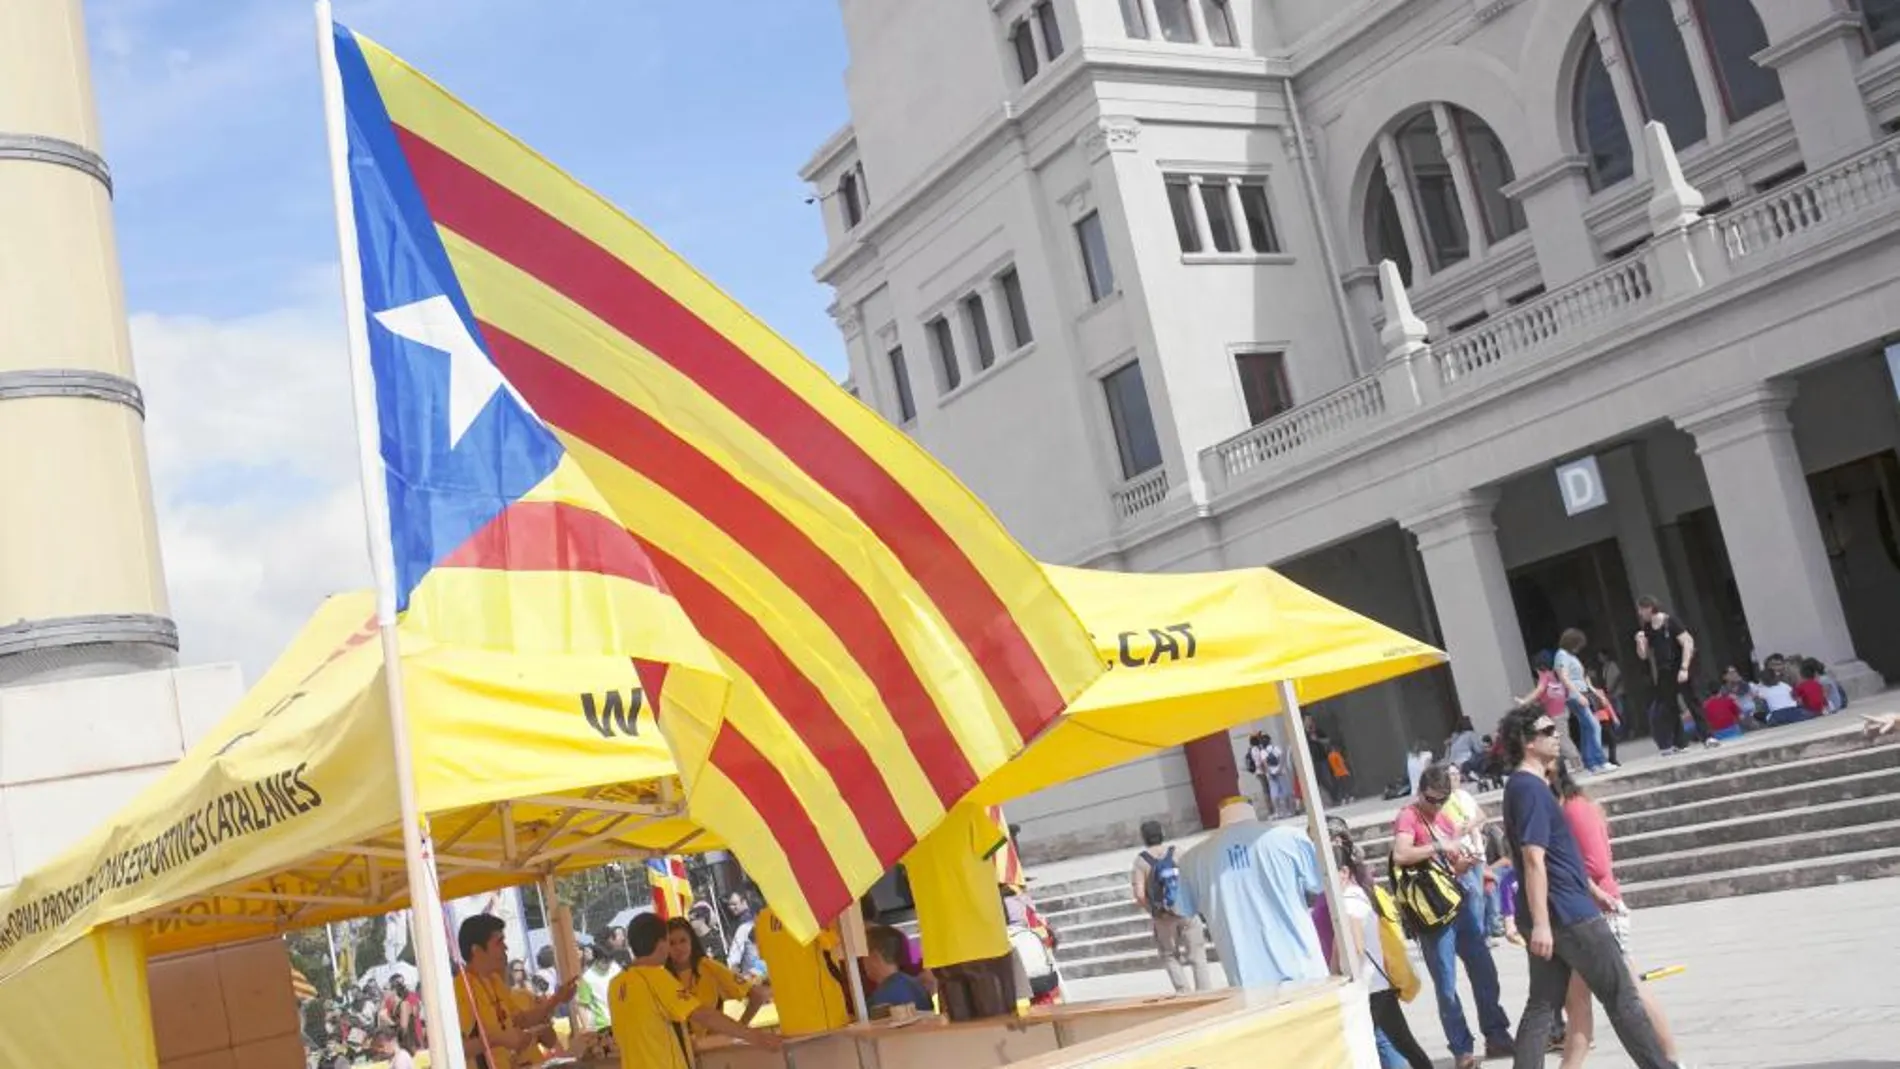 La parada de la Plataforma Pro Seleccions Catalanas apostó por difundir ideas separatistas entre los más pequeños